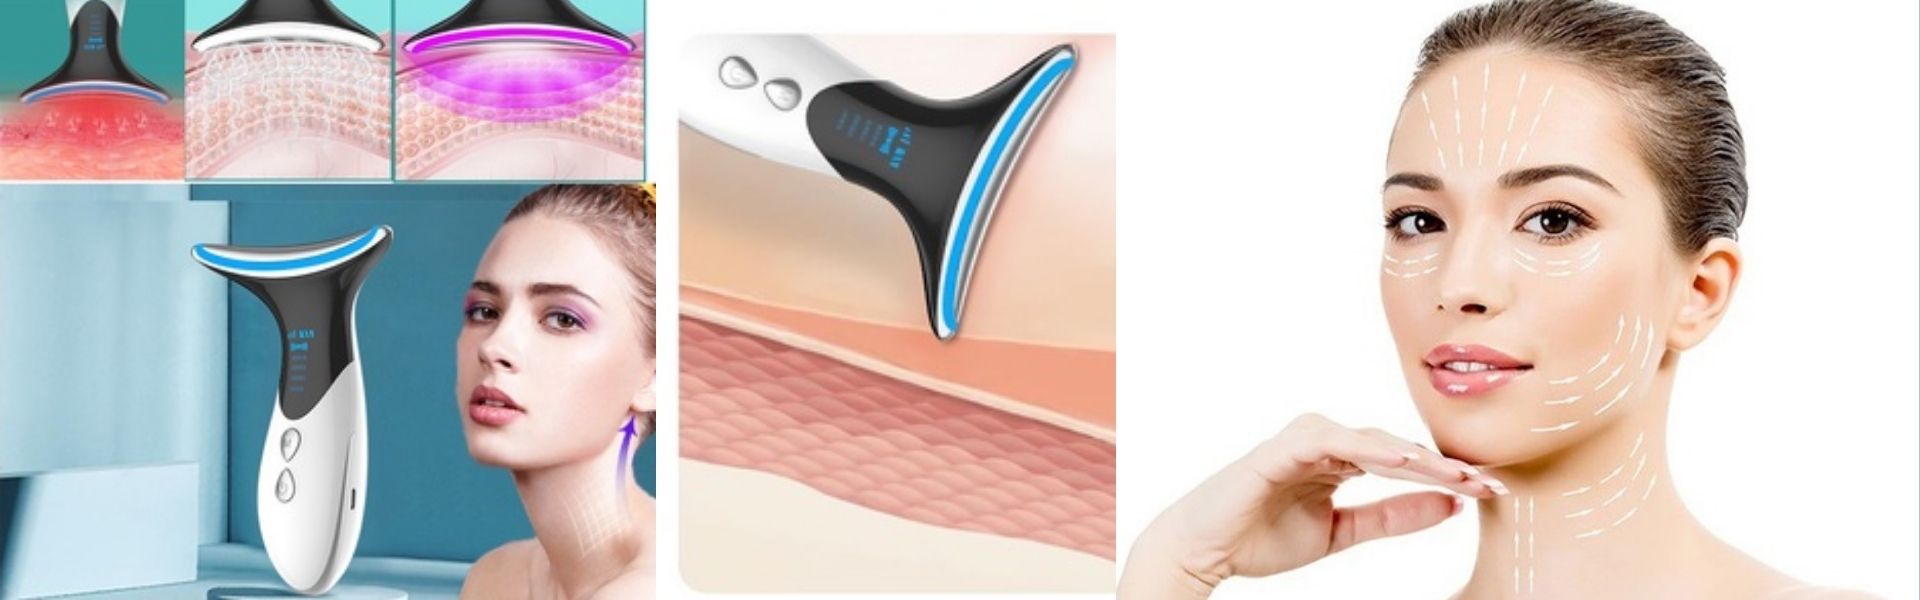 Phương pháp để có một làn da săn chắc nhờ vào máy massage mặt Vline